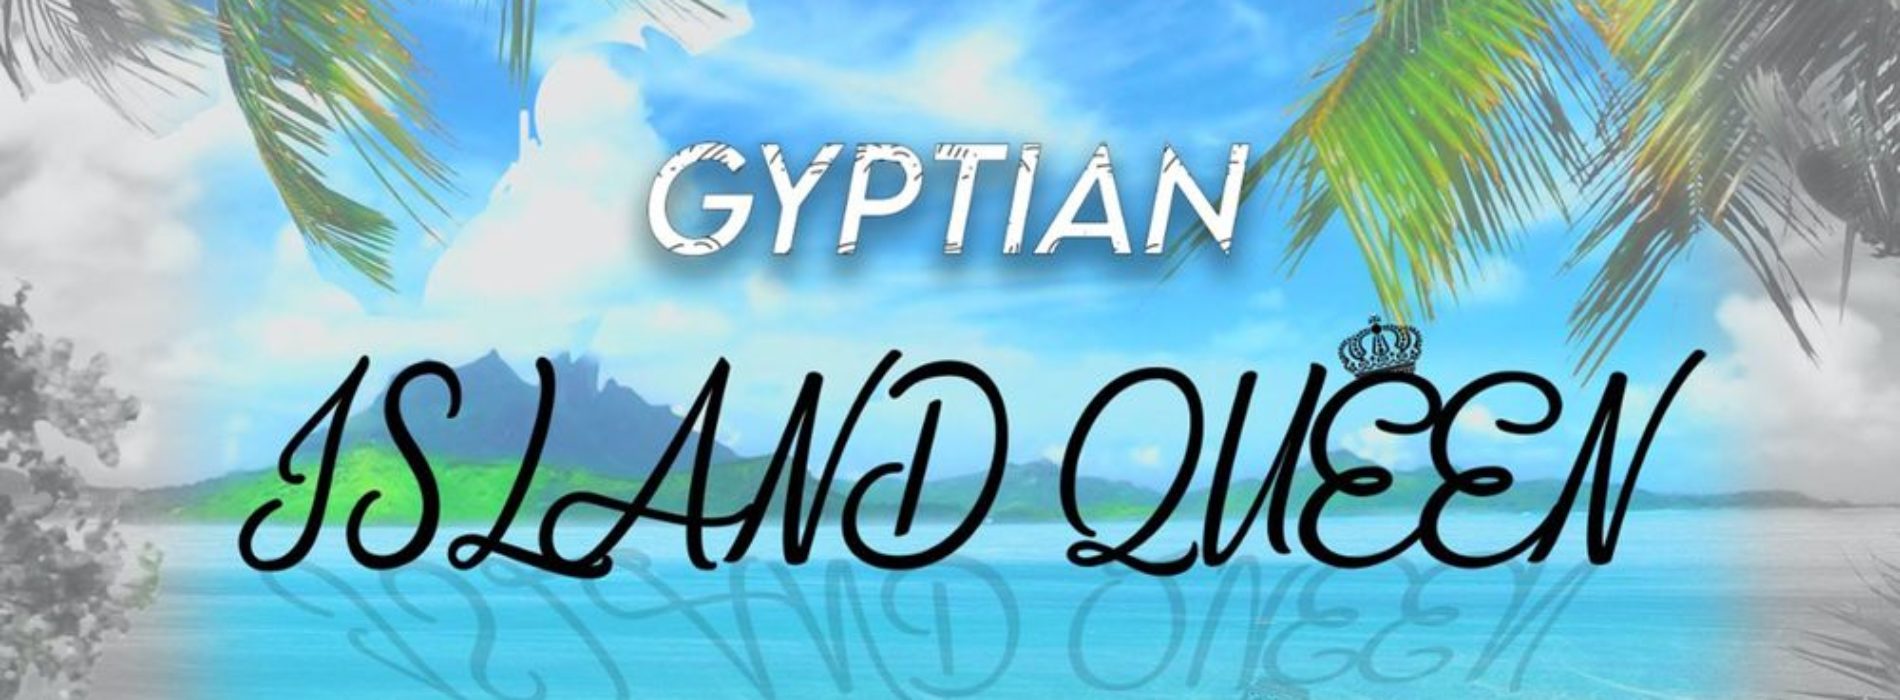 Gyptian – Island Queen | Official Audio – Novembre 2020